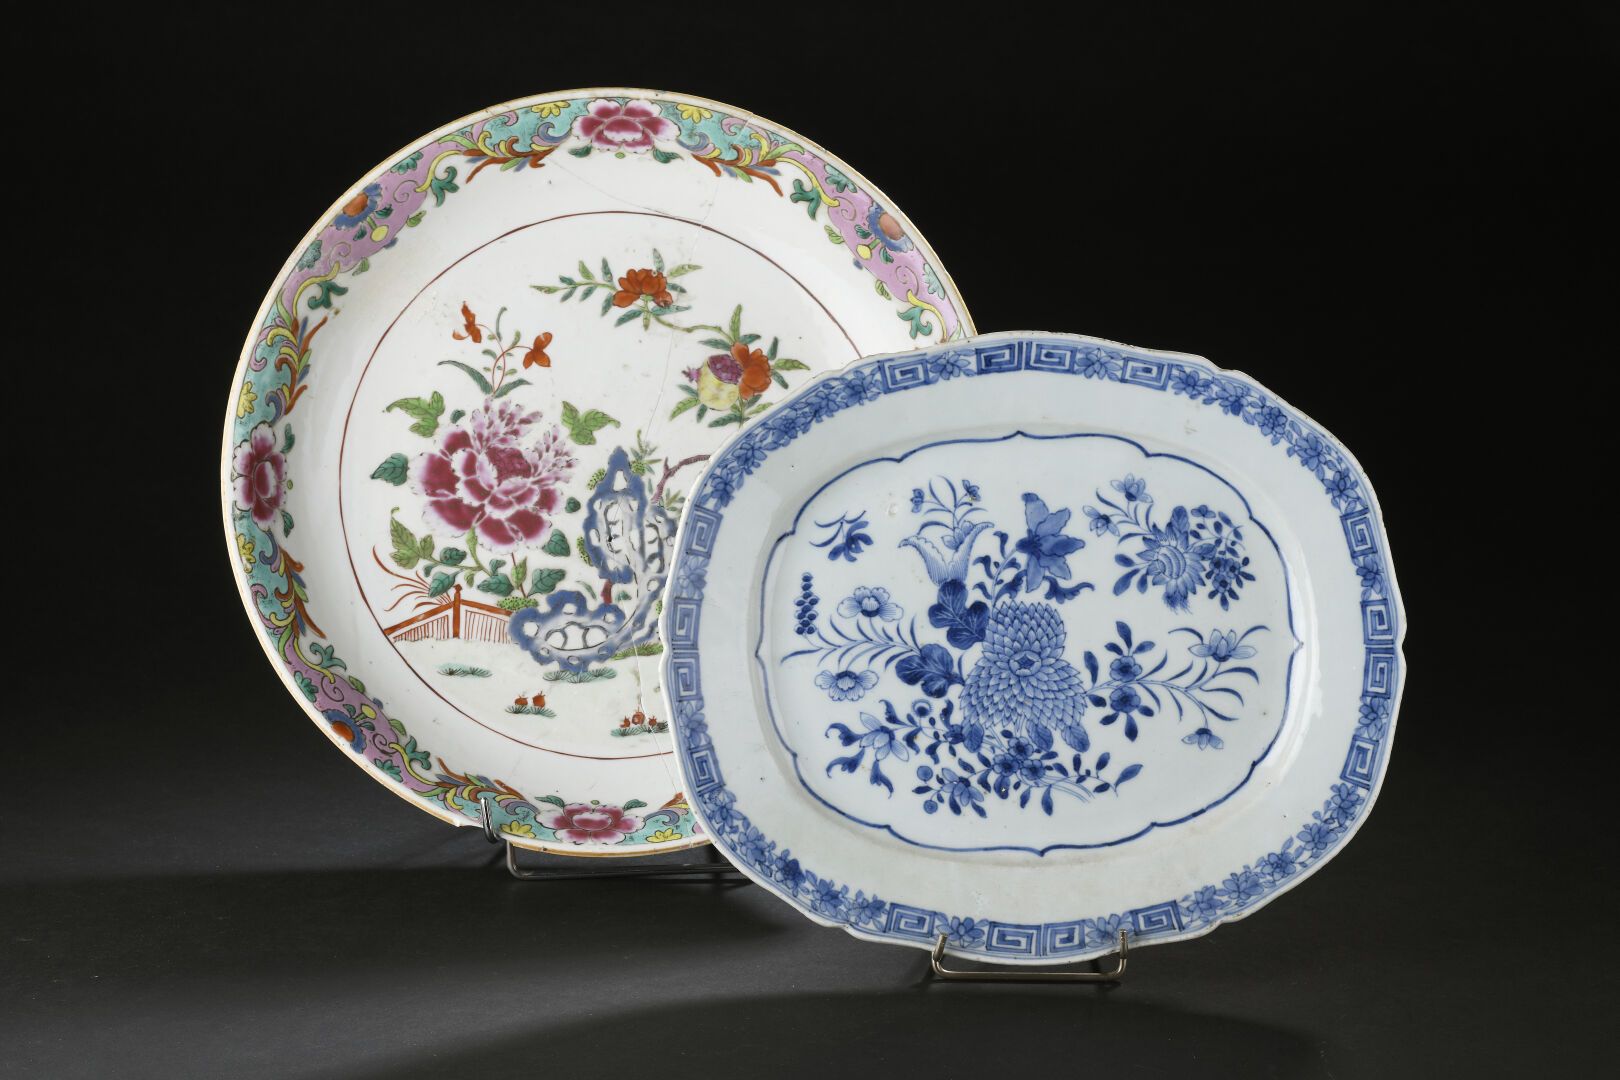 Null 两个青花和粉彩瓷盘
中国，18世纪
第一个盘子有扇形边缘，装饰有花束，第二个盘子是圆形的，装饰有牡丹、水果和石头，边缘有牡丹和叶子的珐琅彩（破碎后重新&hellip;